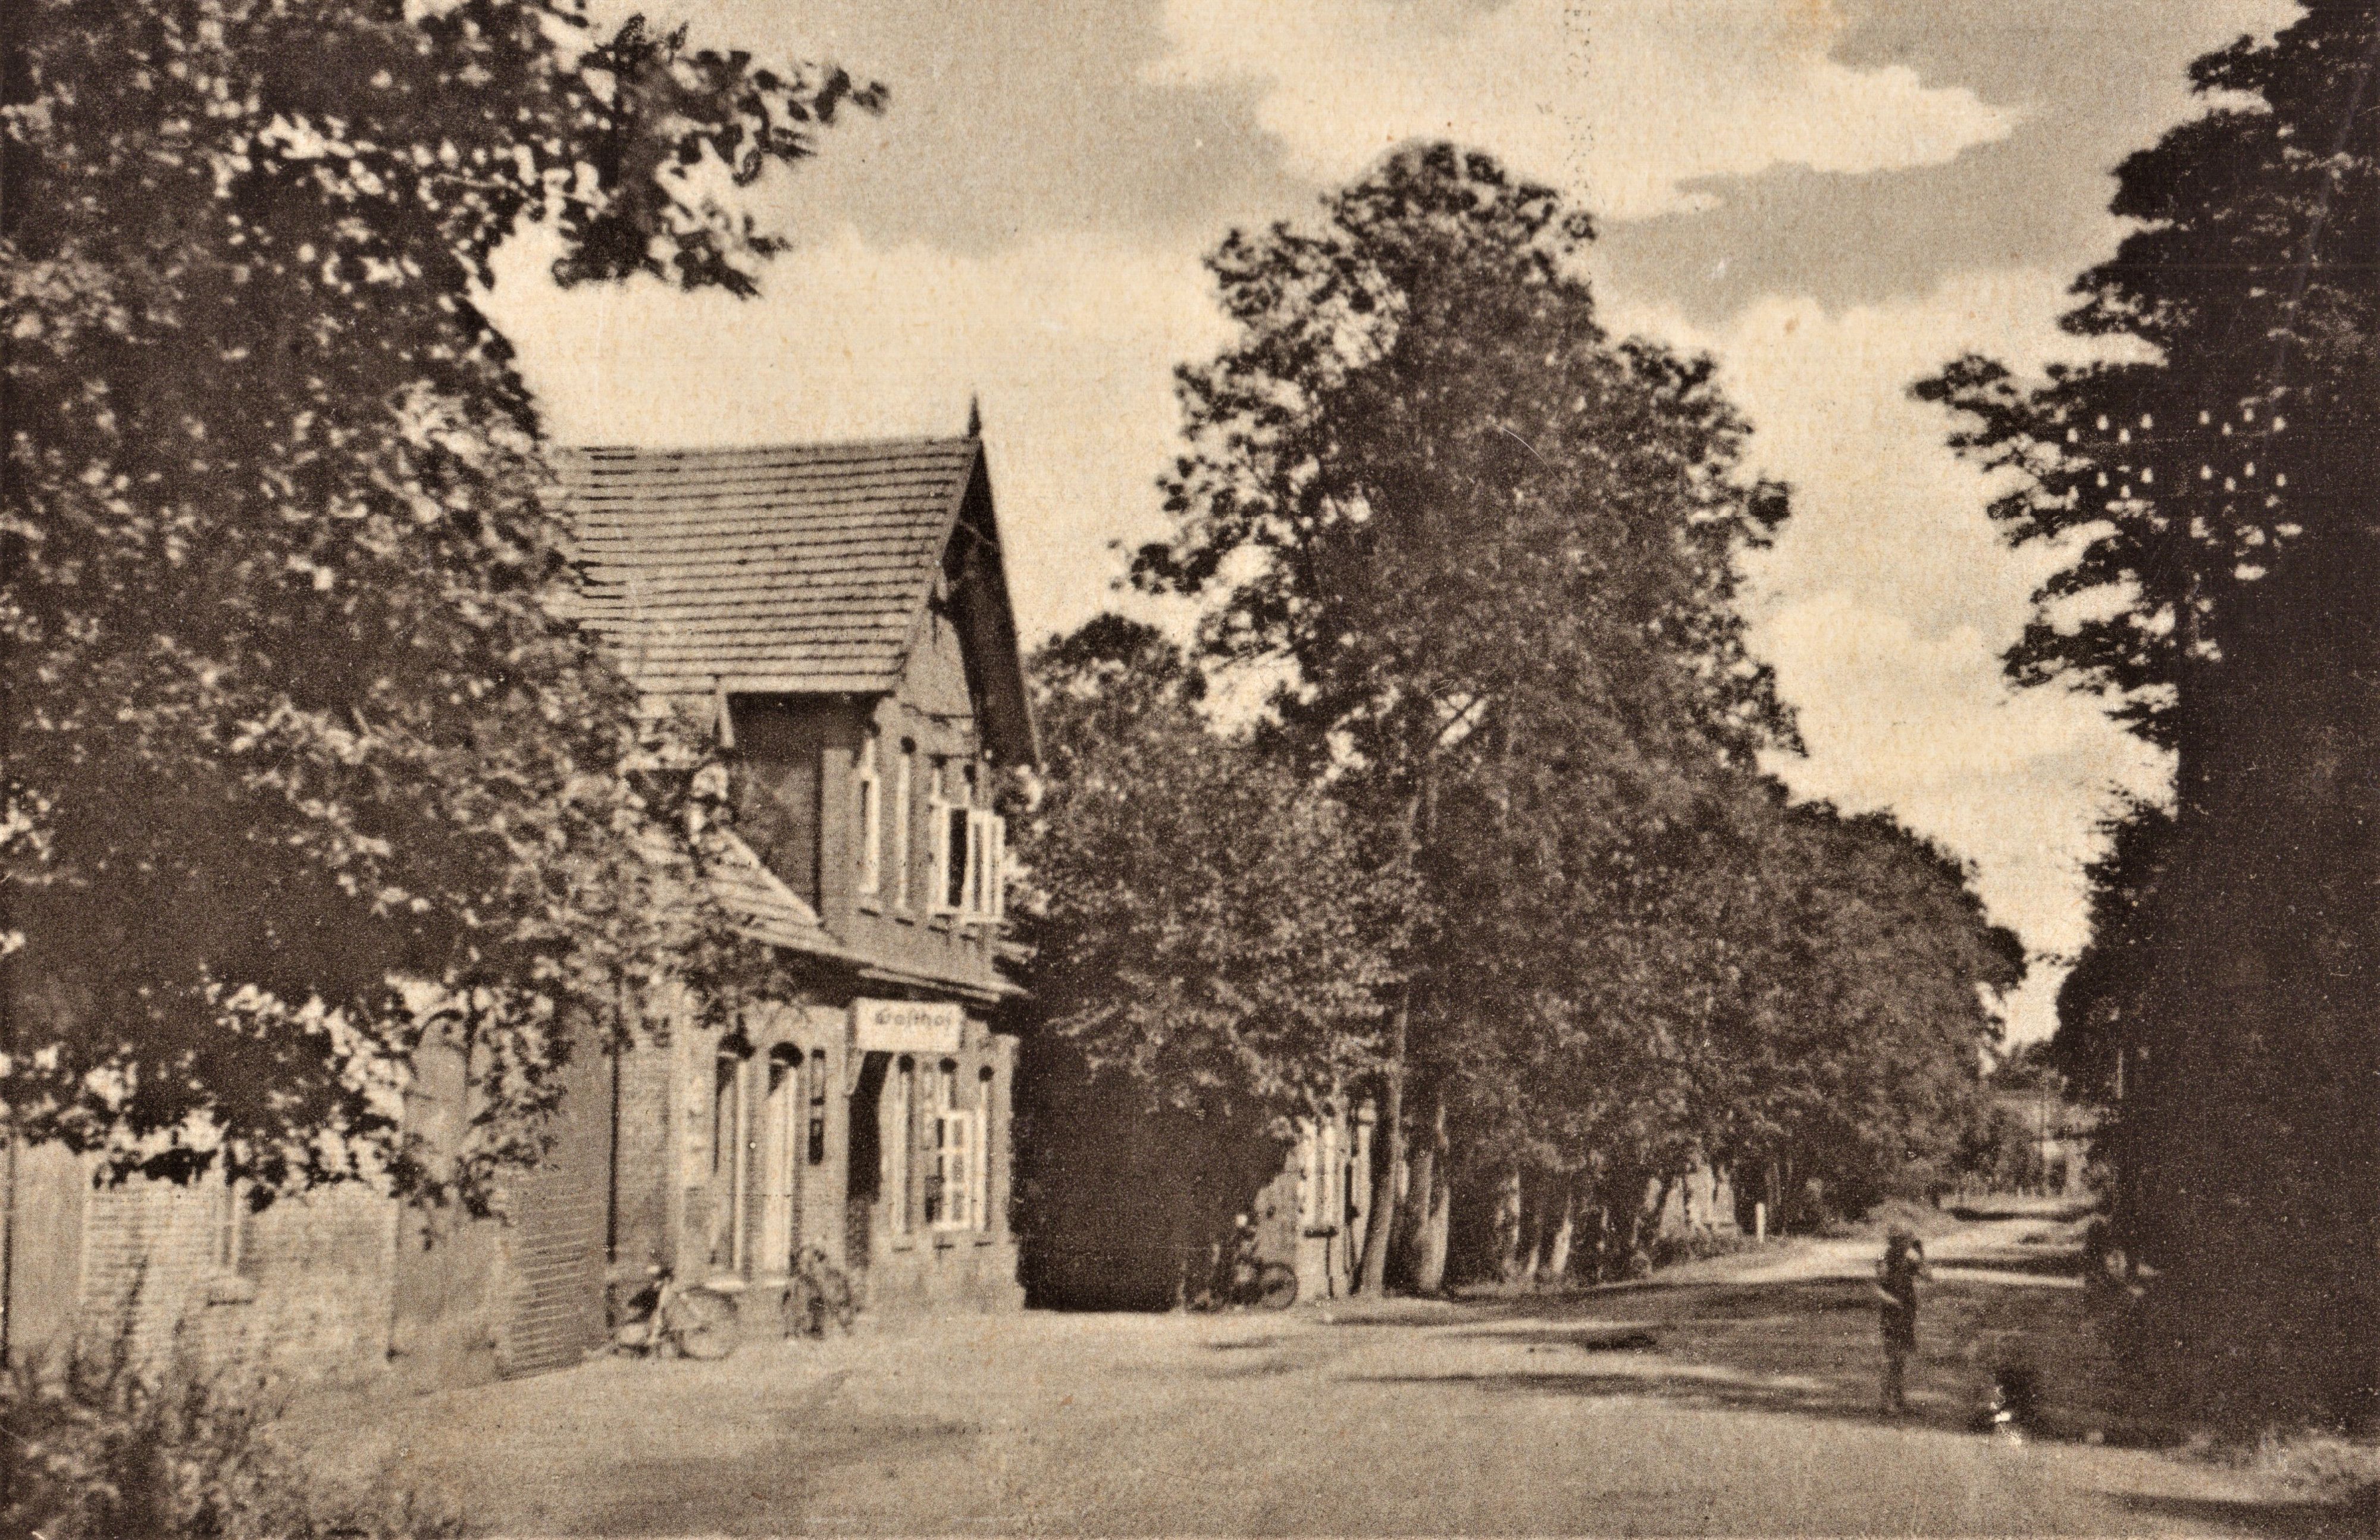 Gasthaus Rohen Ende des 19. Jahrhunderts: Hier wurde vor 145 Jahren gewählt. Foto: Archiv/Pille